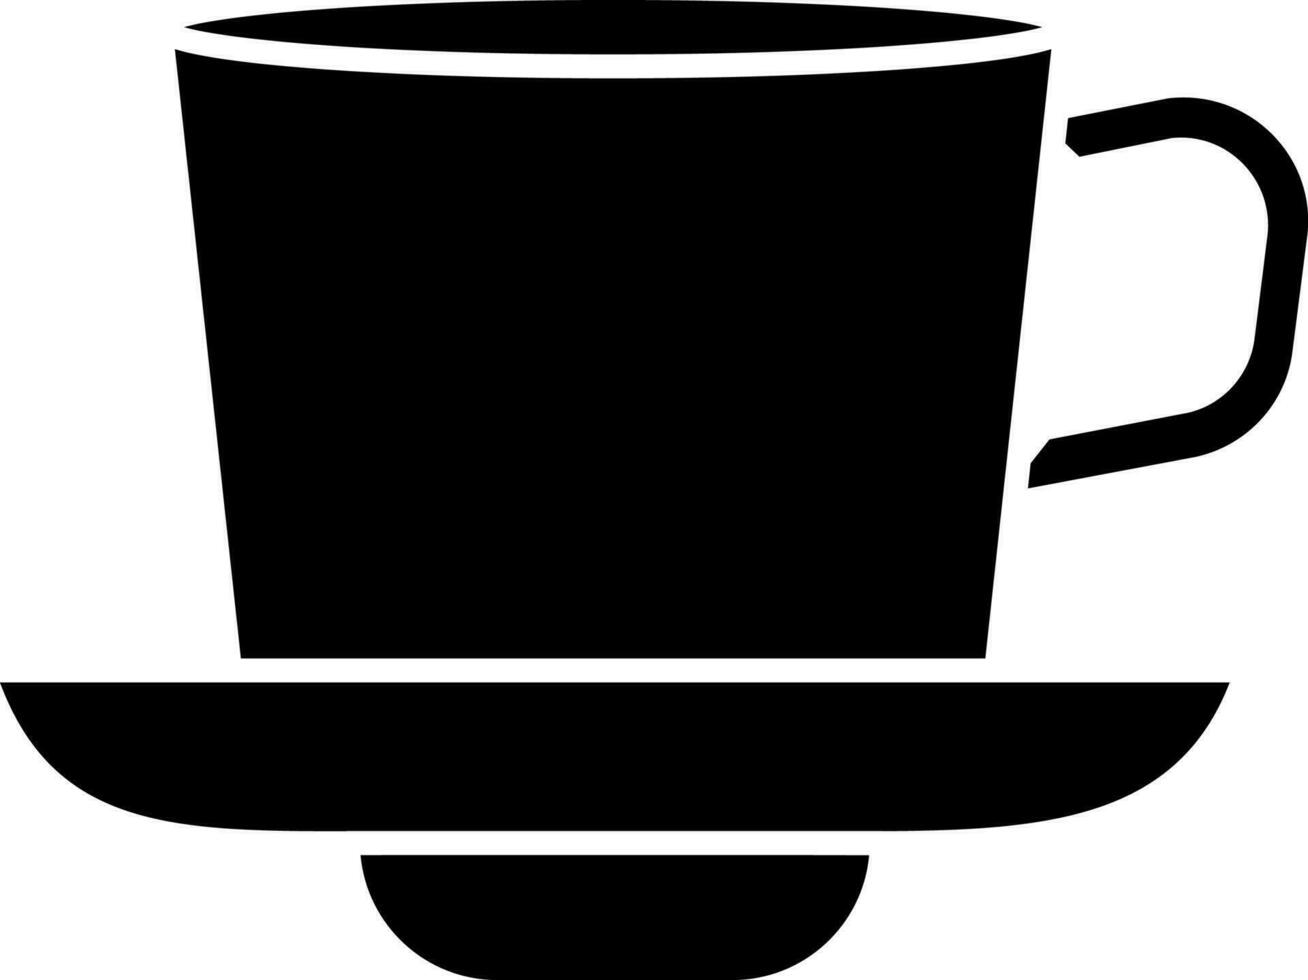 Glyph tea cup icon or symbol. vector